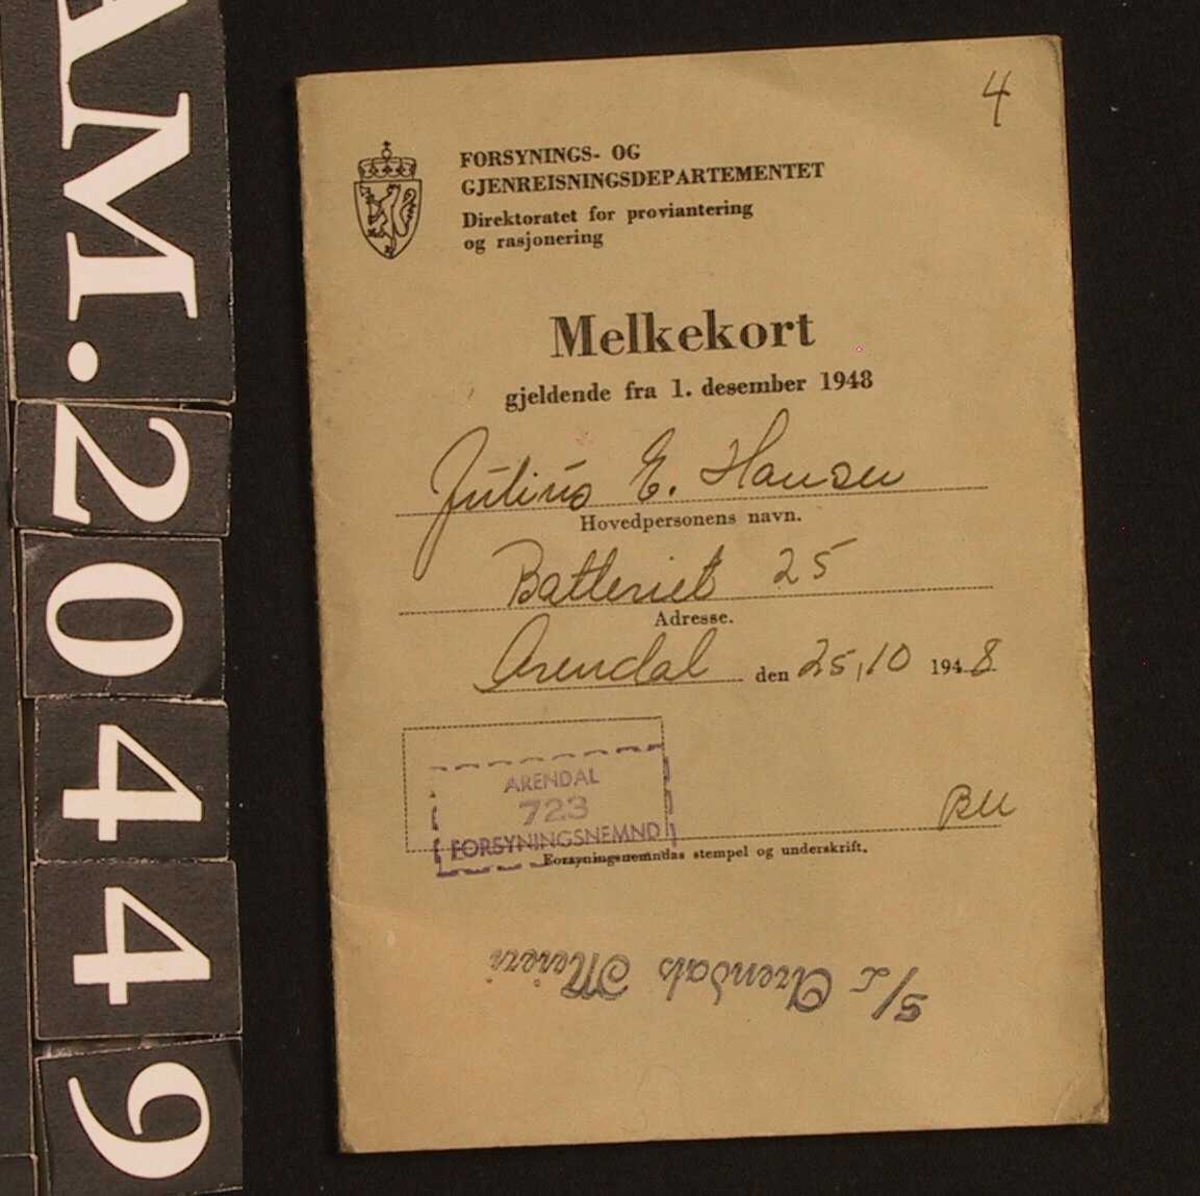 Melkekort.  Grått   kartongpapir.  Gjeldende fra 1. desember 1948.  Stemplet med blått:   Arendals Meieri. Kunde nr. 867.  Få avmerkinger for kjøp.